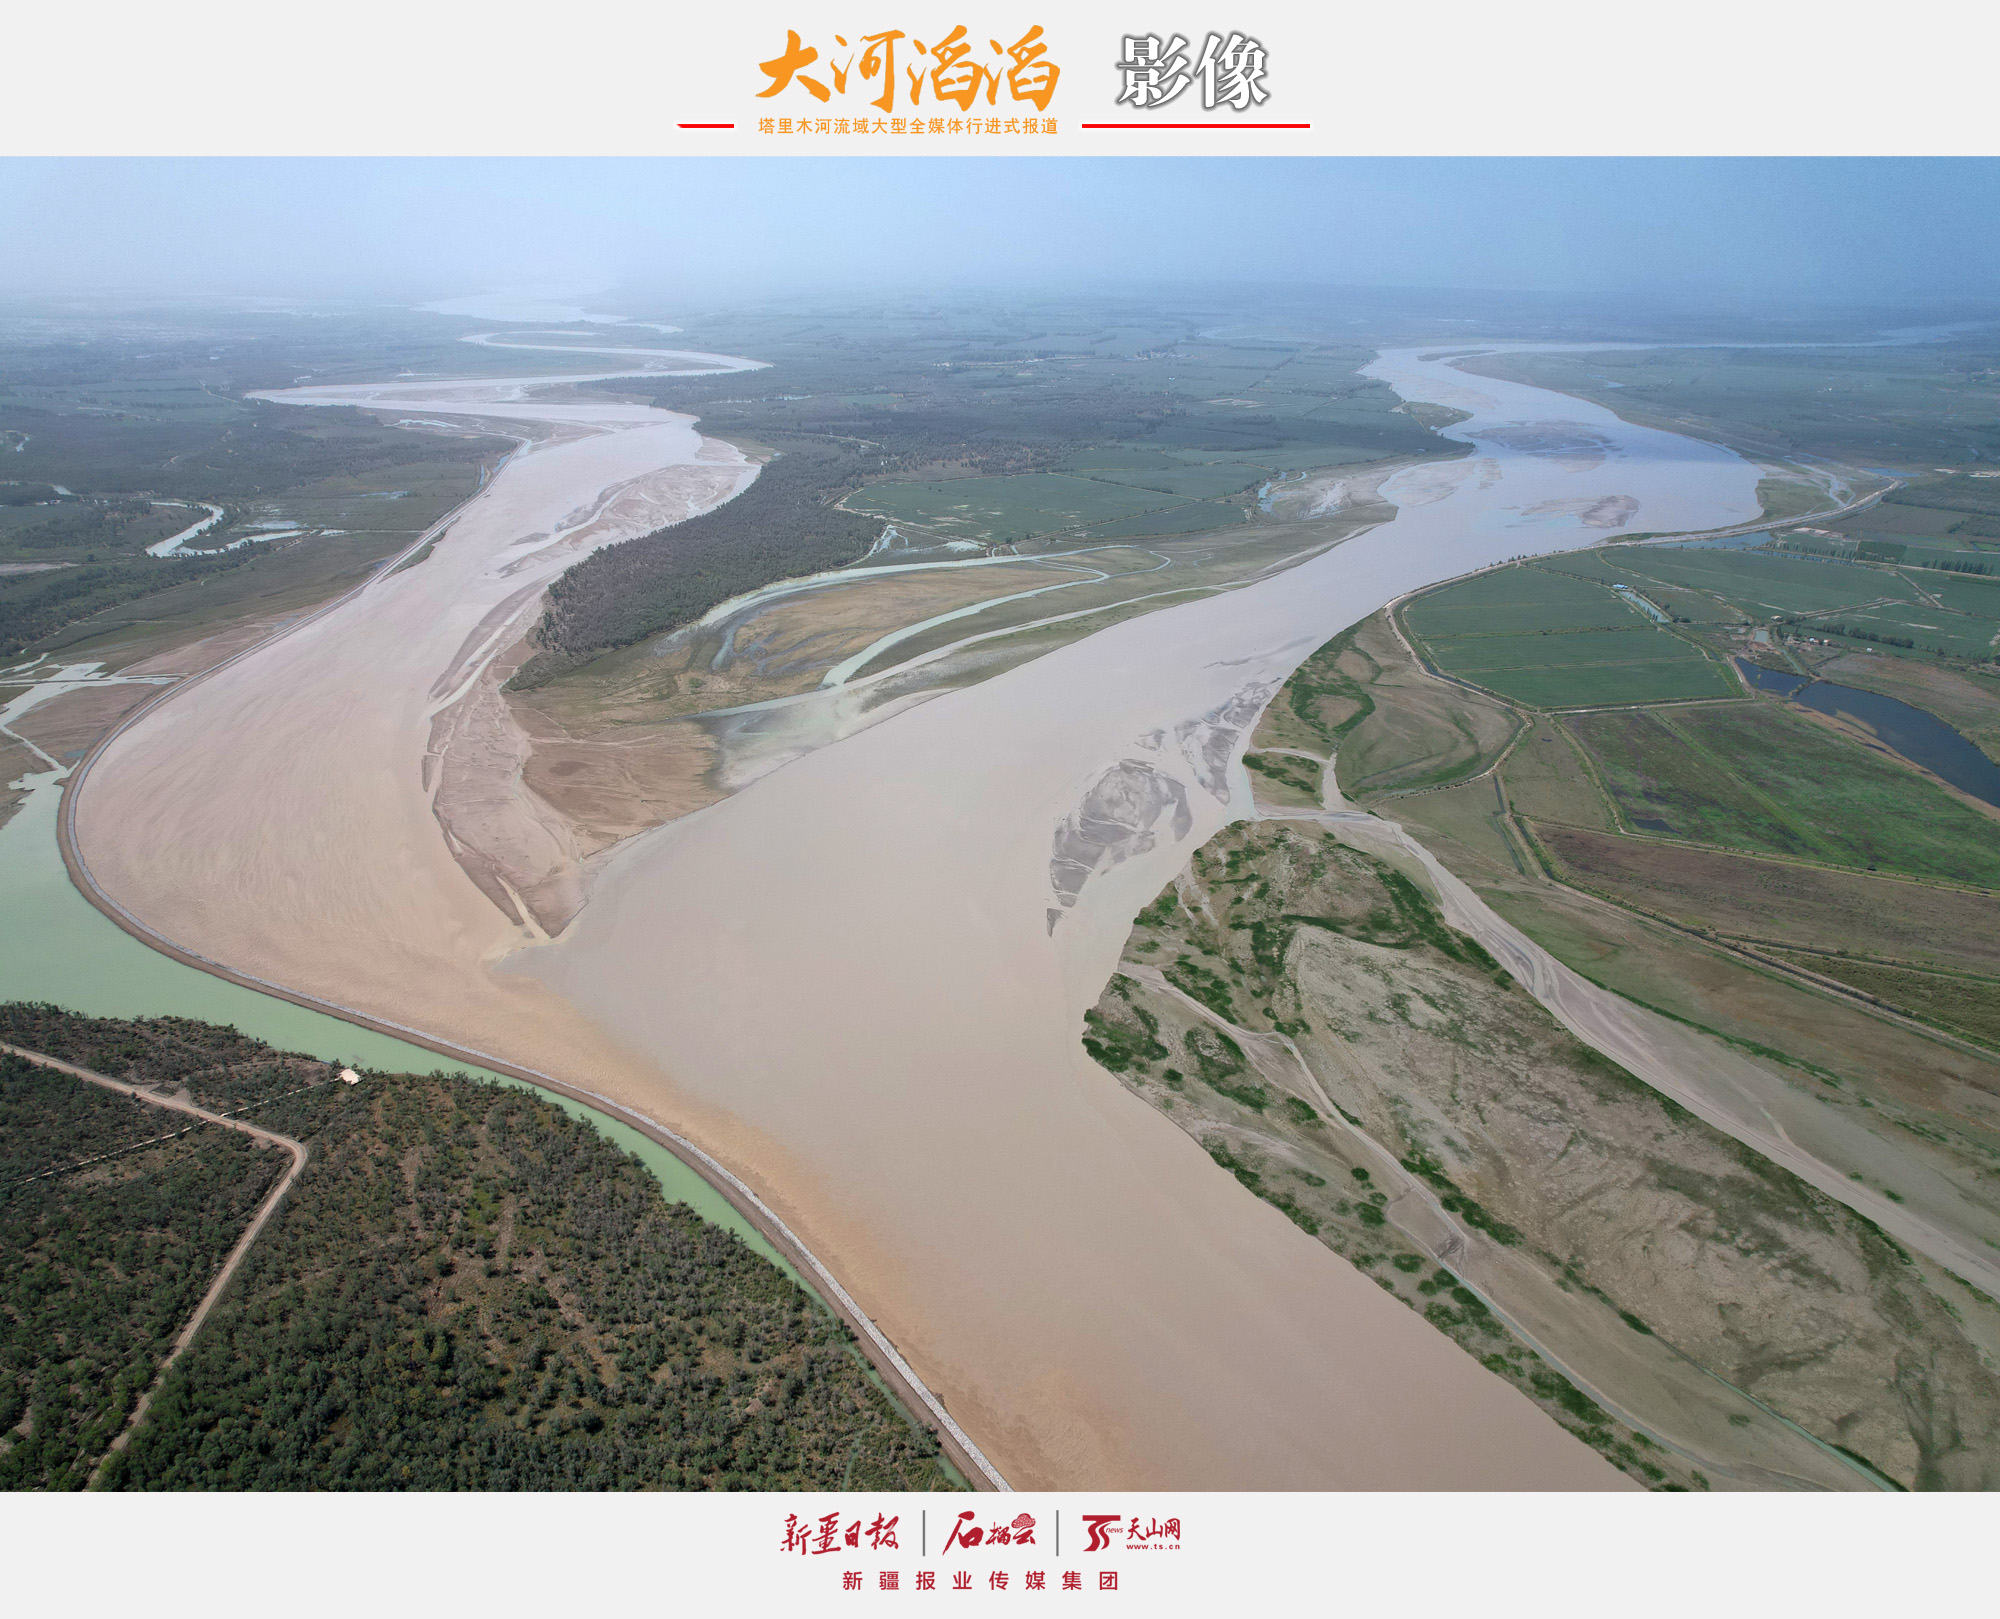 大河滔滔·影像⑧  顺塔河源而下感受水和生命的力量-天山网- 新疆新闻门户